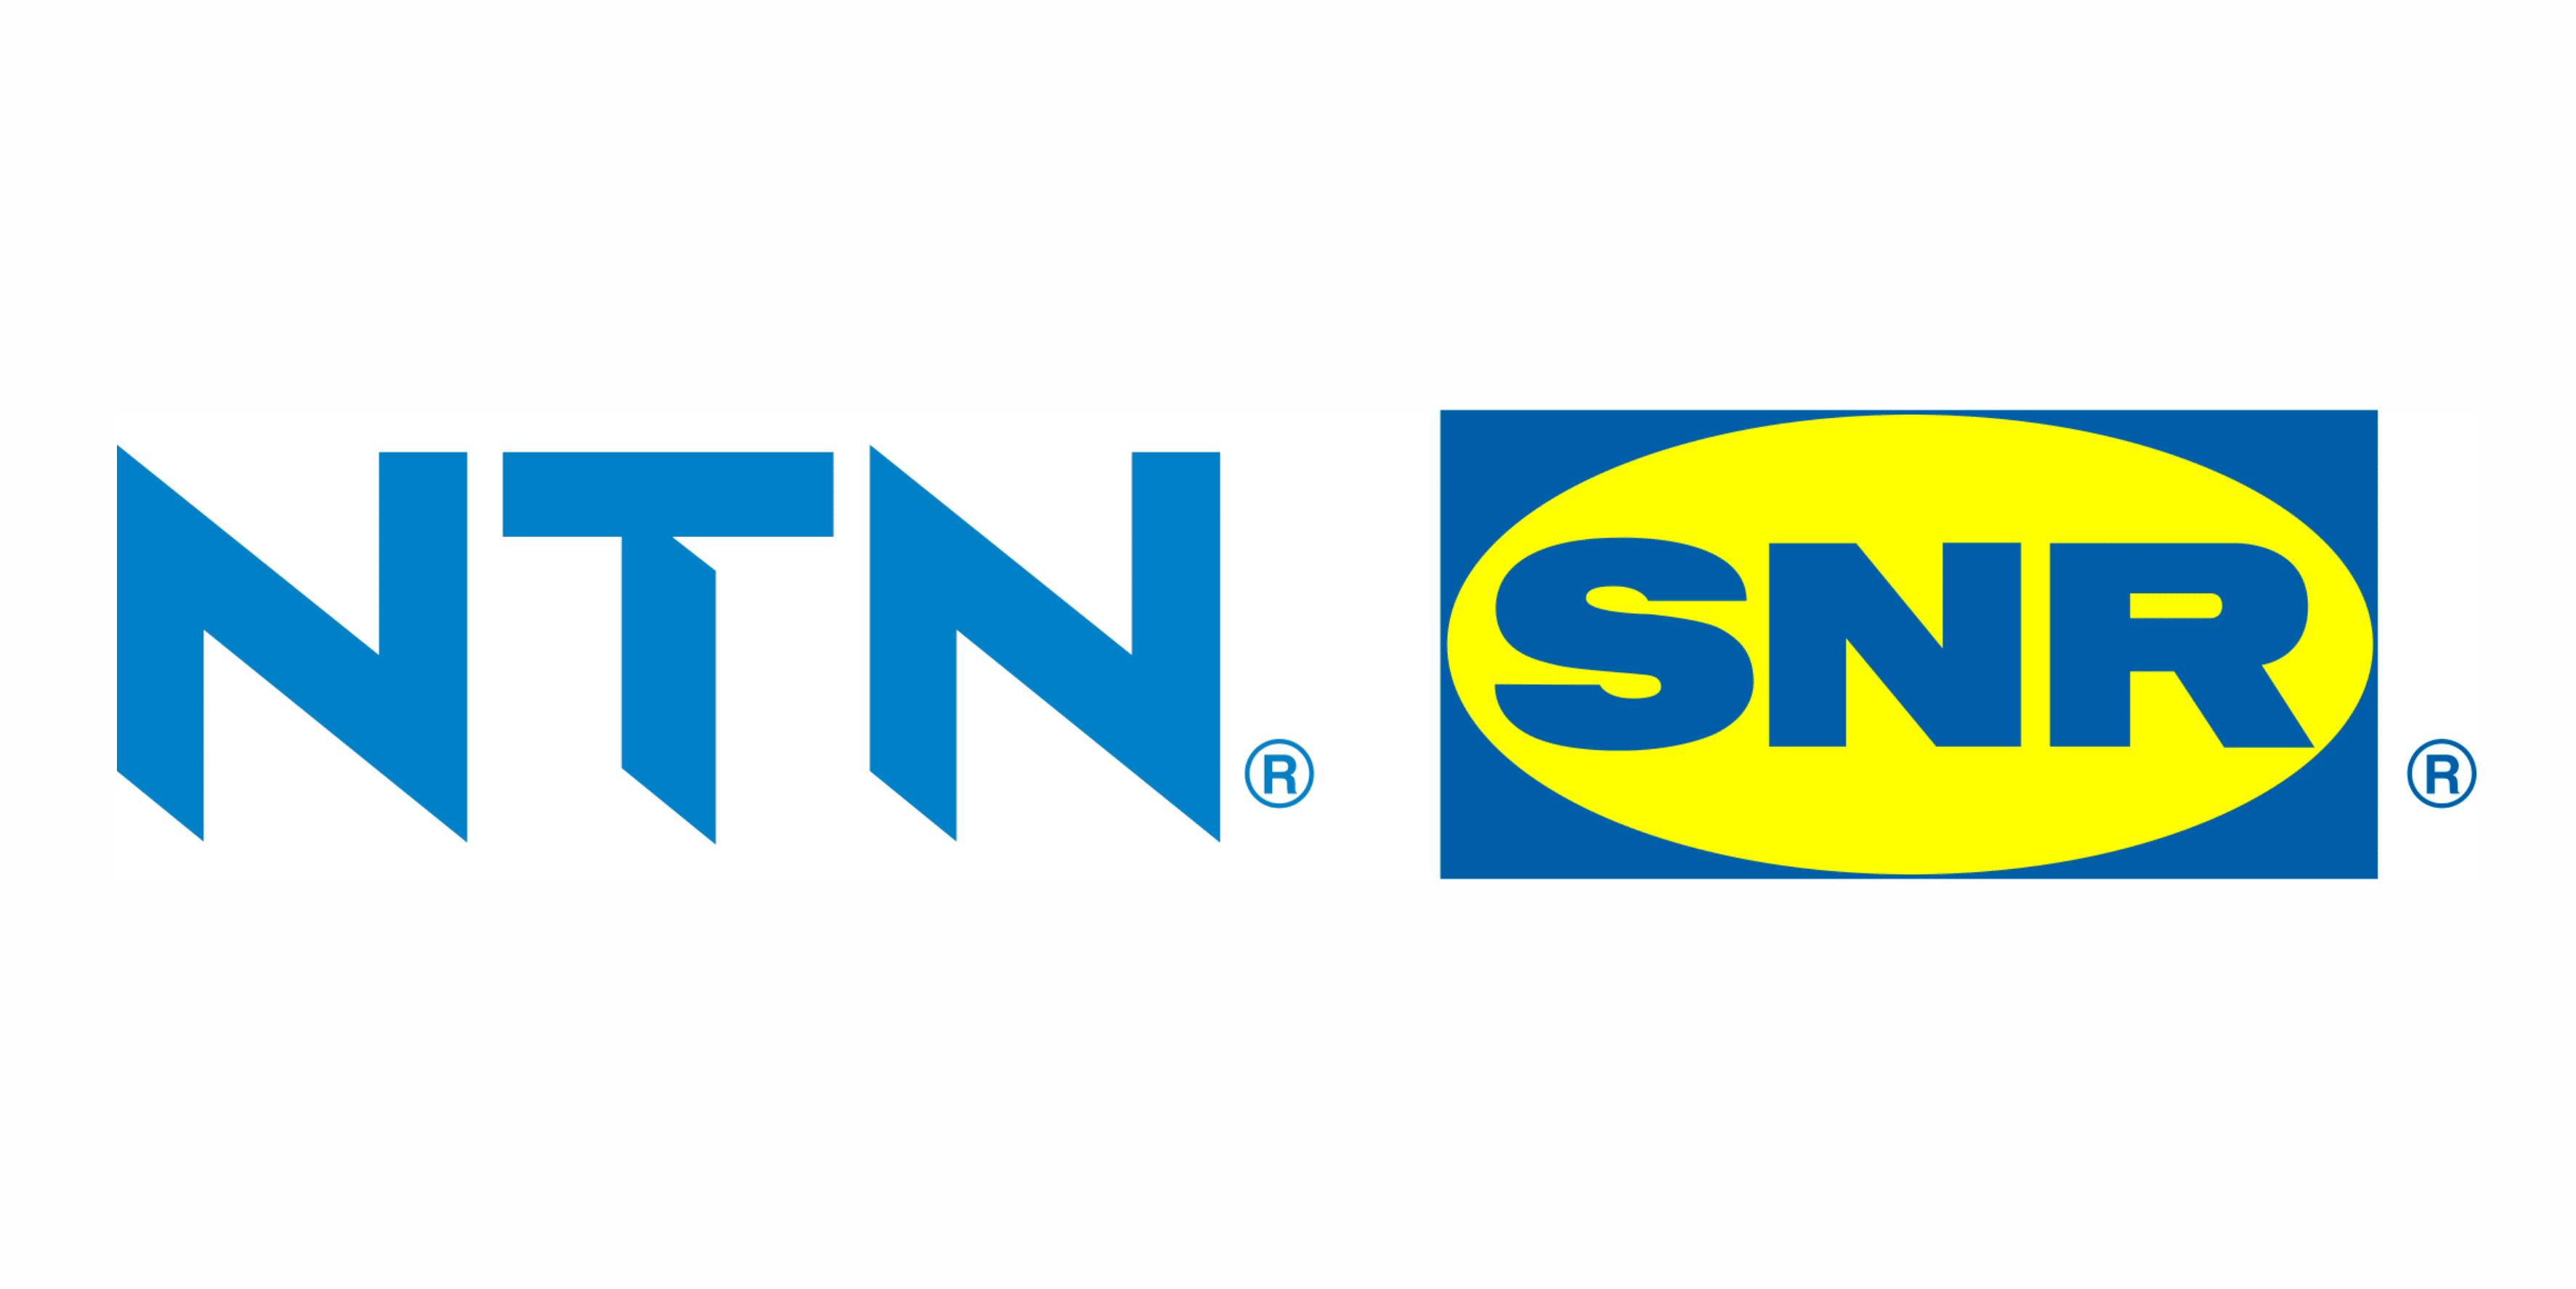 NTN SNR